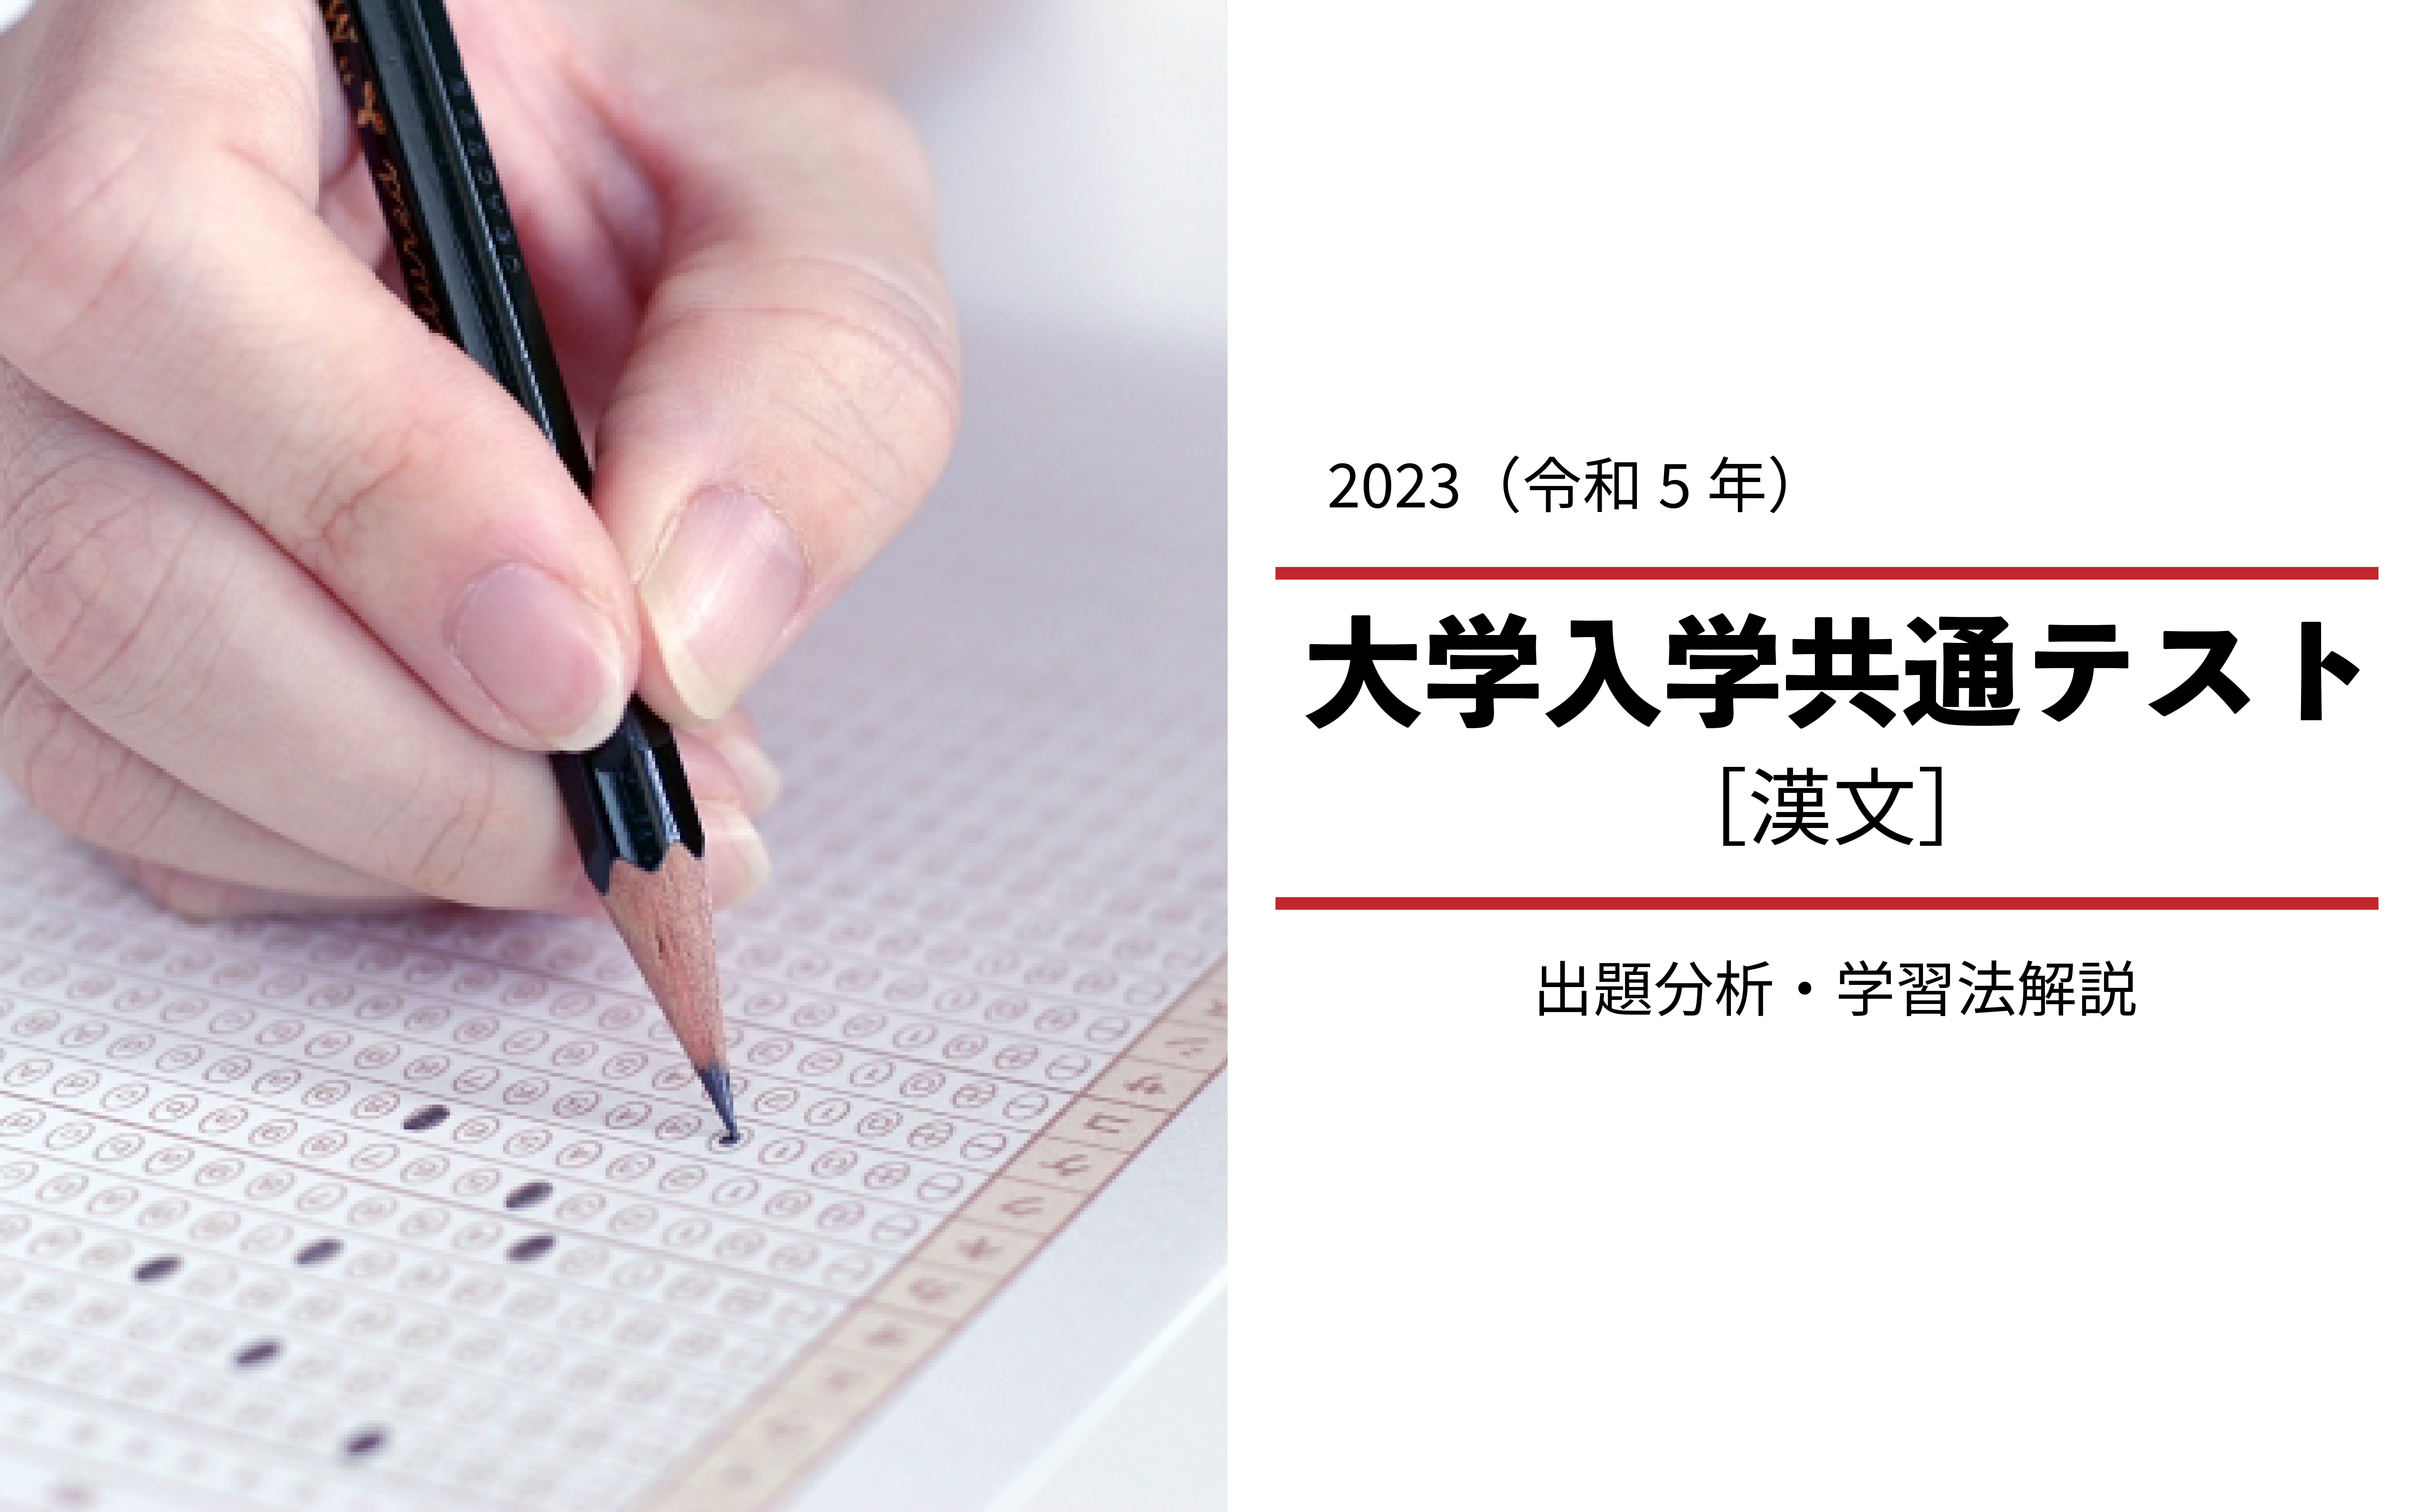 2023年度共通テスト[漢文]から見る高1・高2生の学習法